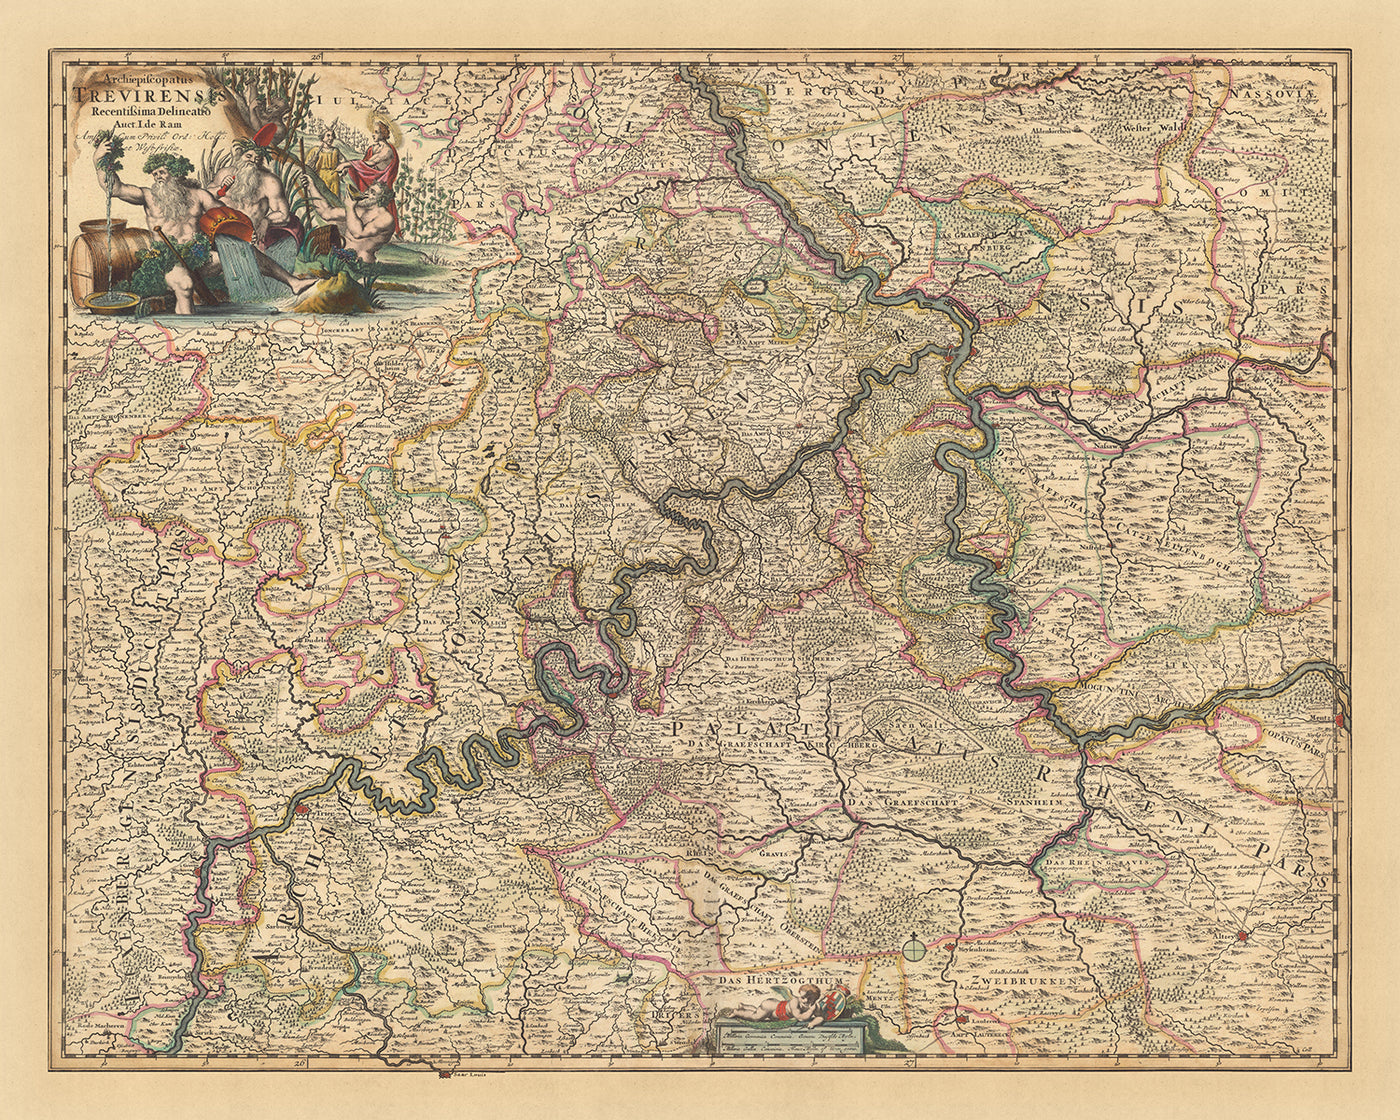 Ancienne carte de l'archevêché de Trèves par Visscher, 1690 : Coblence, Bitburg, Cochem, Mayence, Moselle